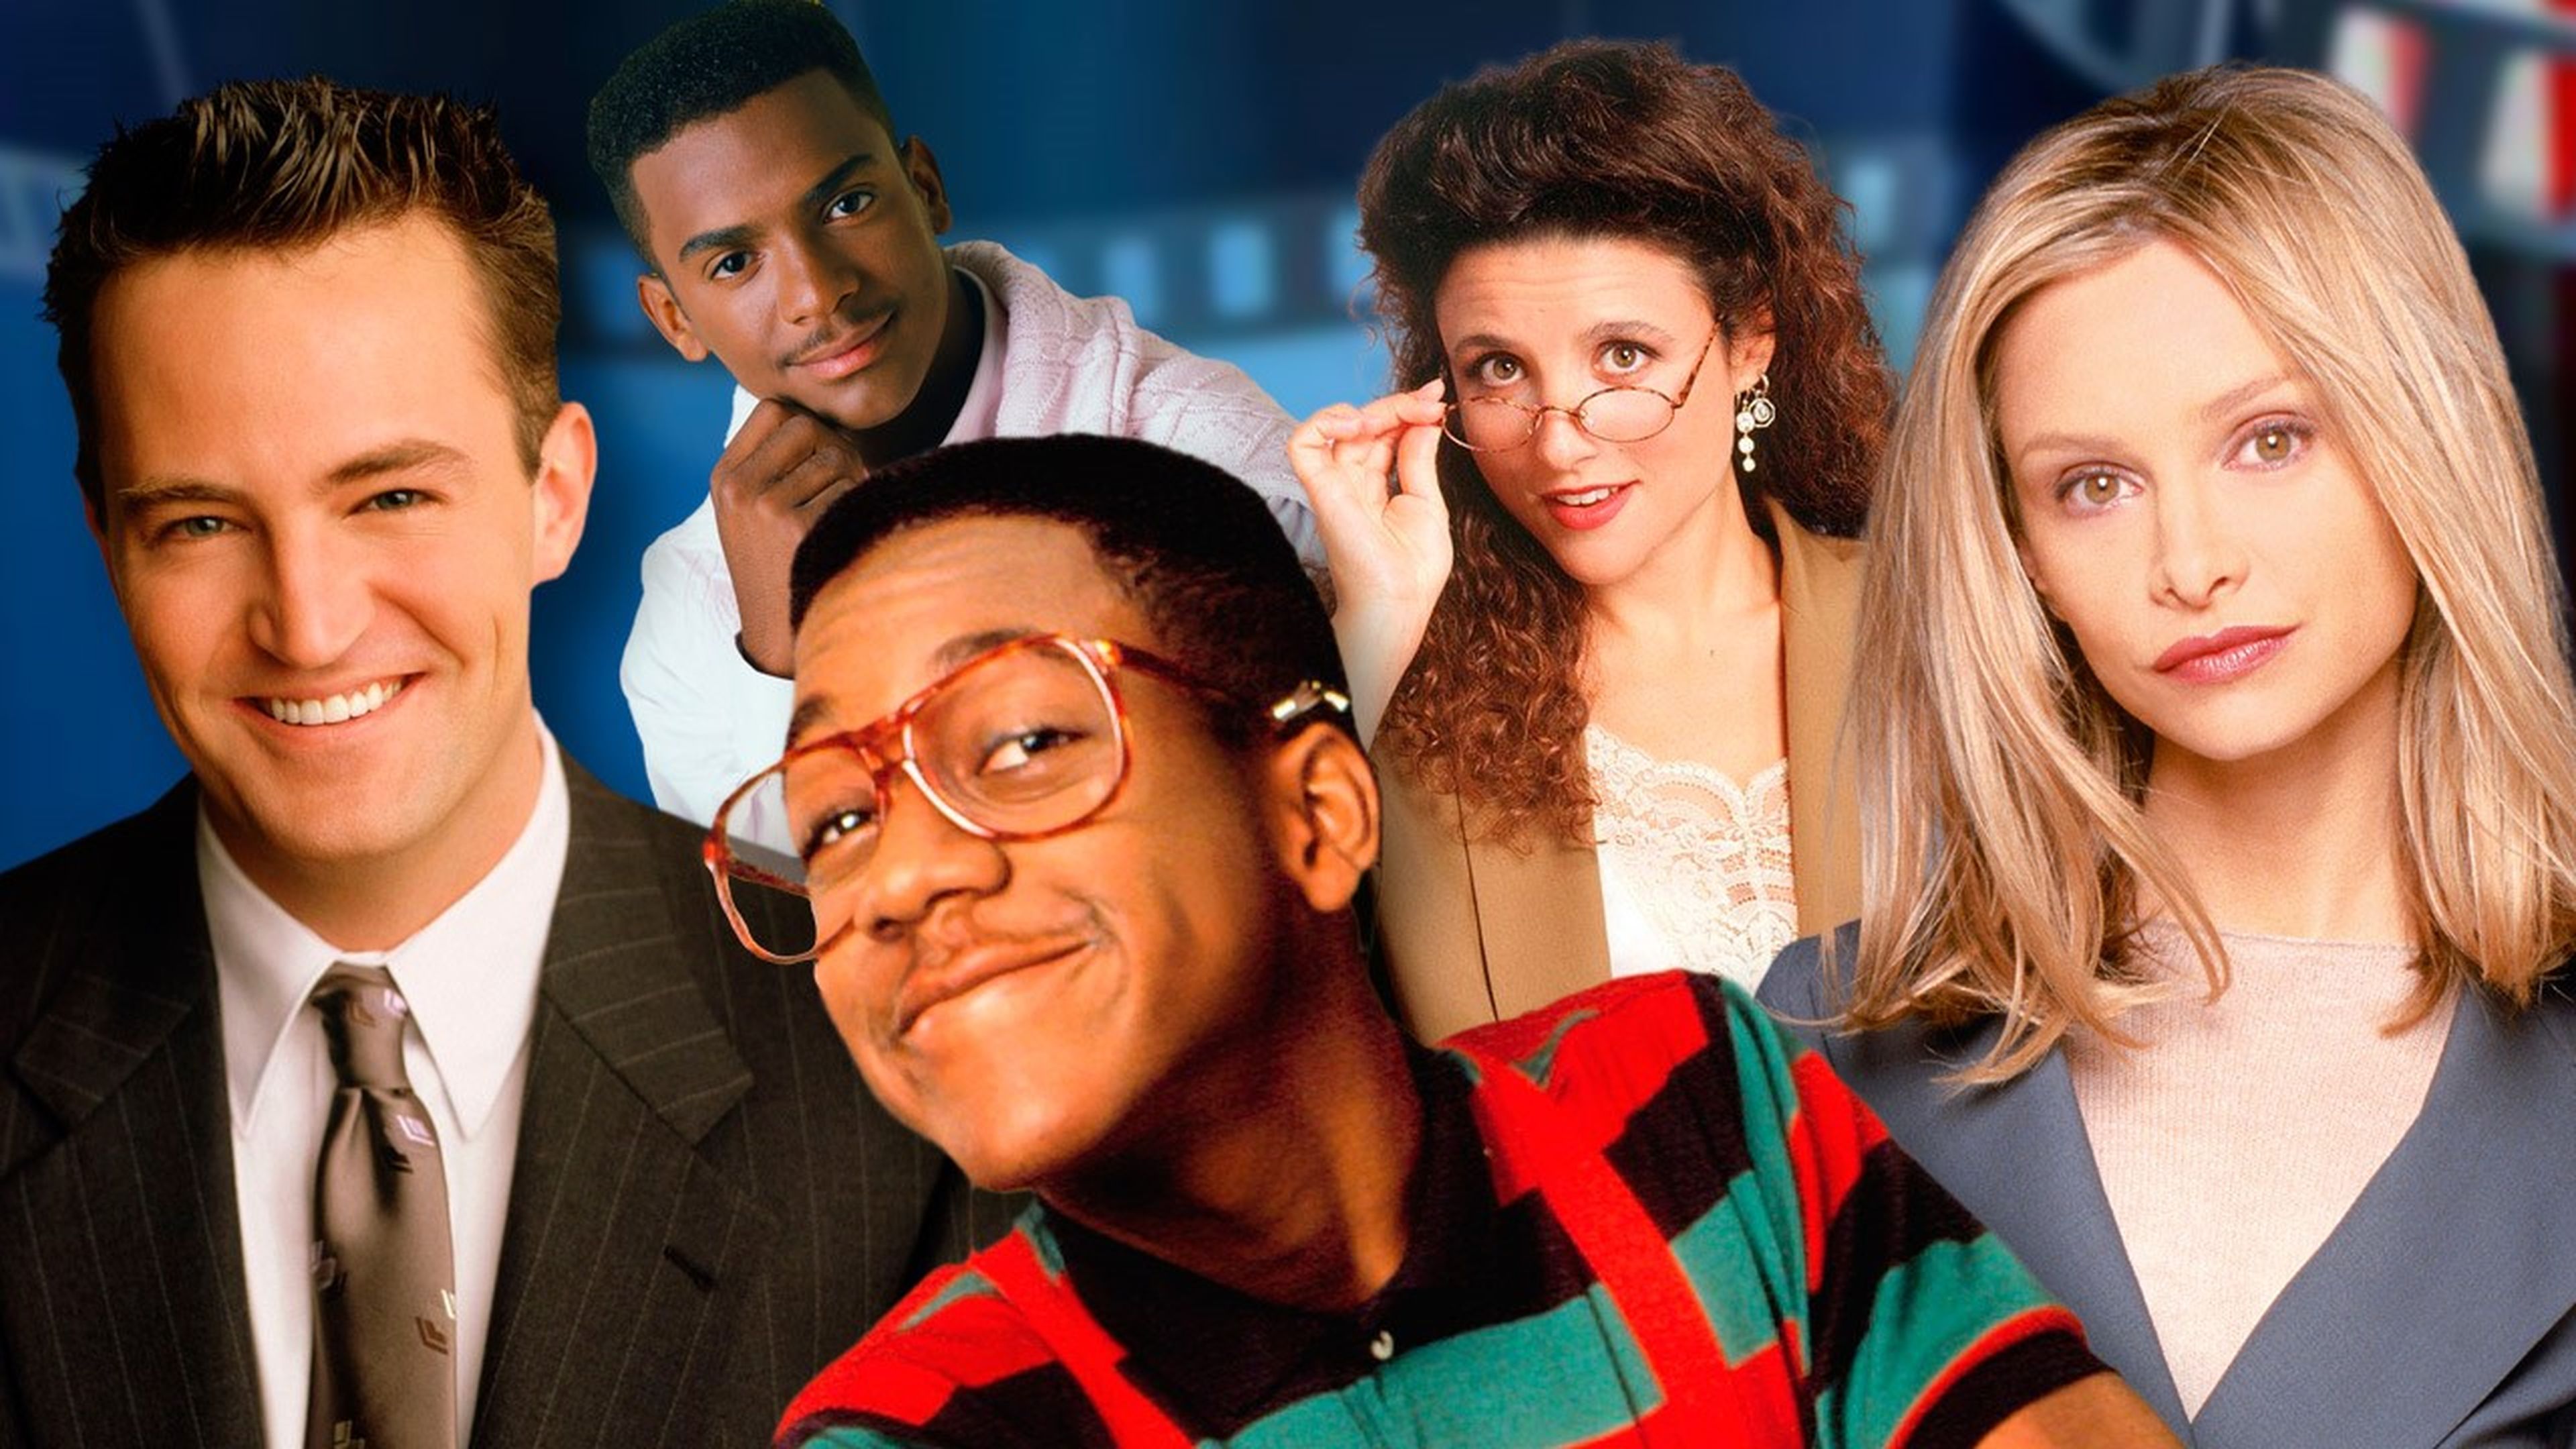 Dónde están ahora los actores de las grandes telecomedias de los 90?